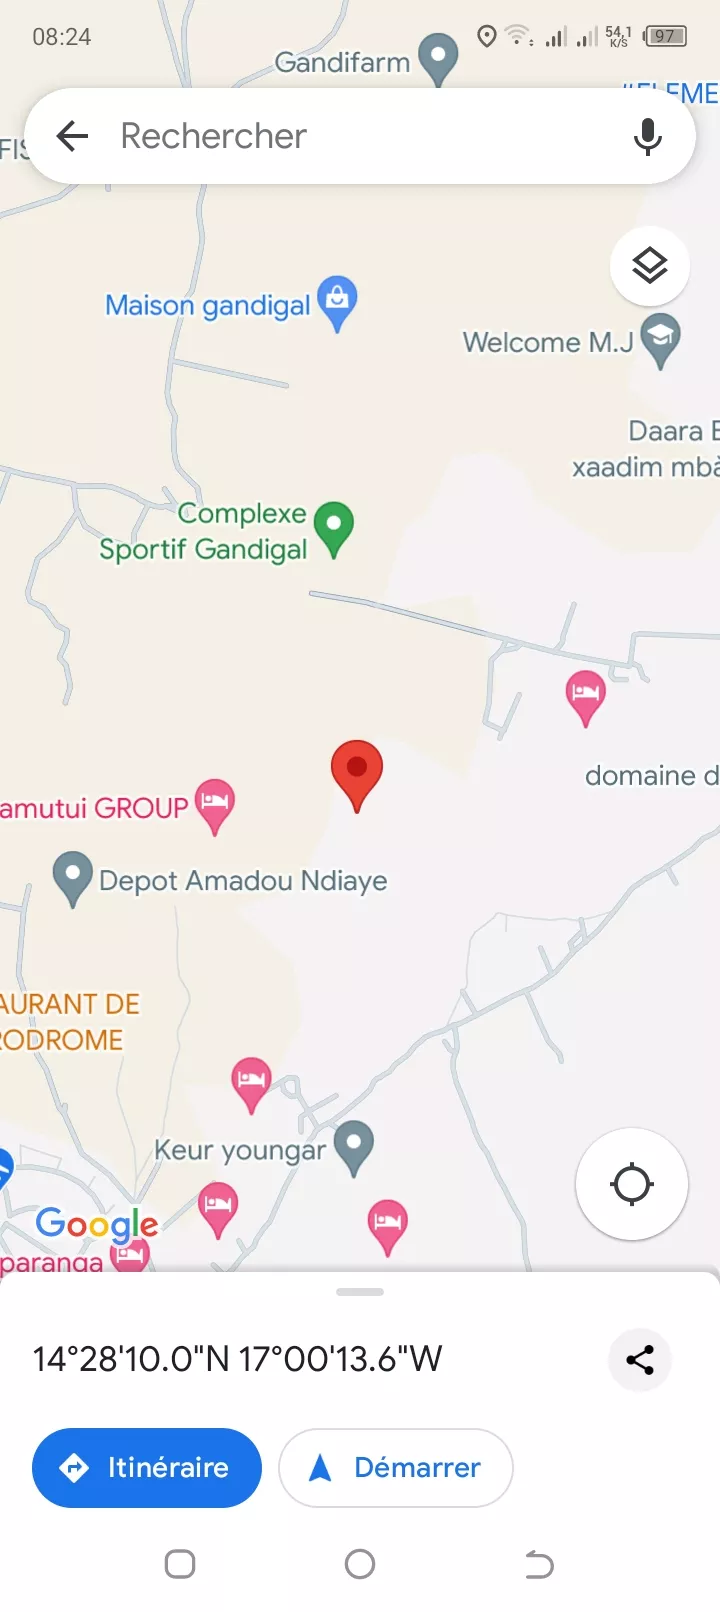 Terrain 500 mètres carrés à Saly à 8000000 - Petites annonces gratuites - Achat et vente à Thiès, Sénégal